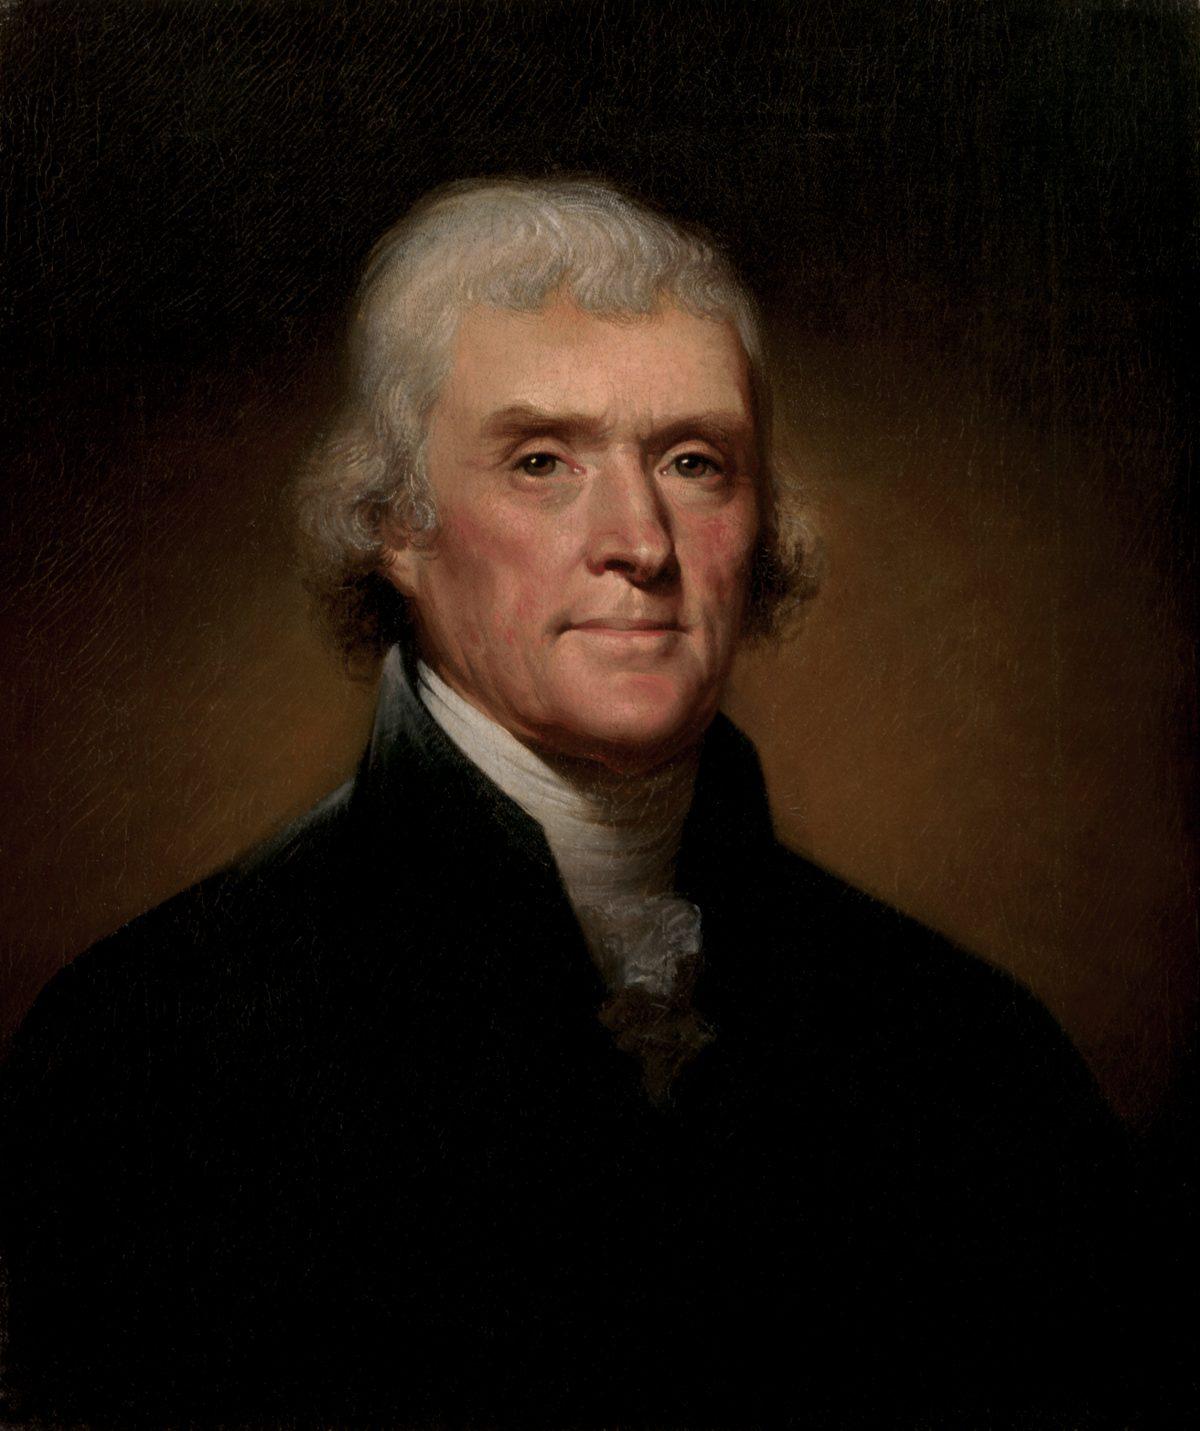 Official Presidential portrait of Thomas Jefferson. (public domain)